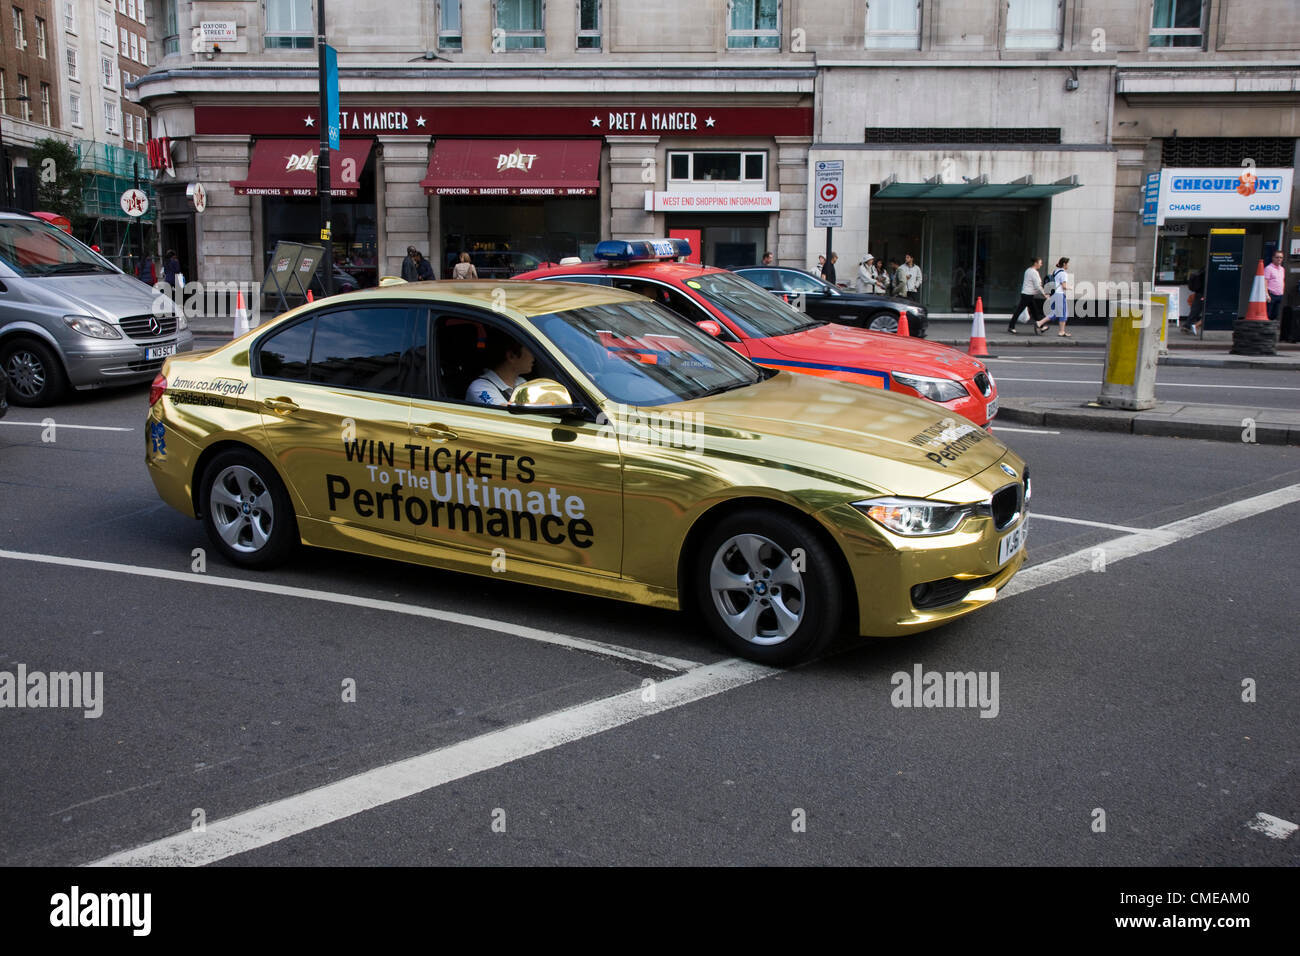 Or promotion voiture BMW avec logos olympiques de 2012 à Londres. Un policier parle avec le conducteur arrêté à un feu rouge. Banque D'Images